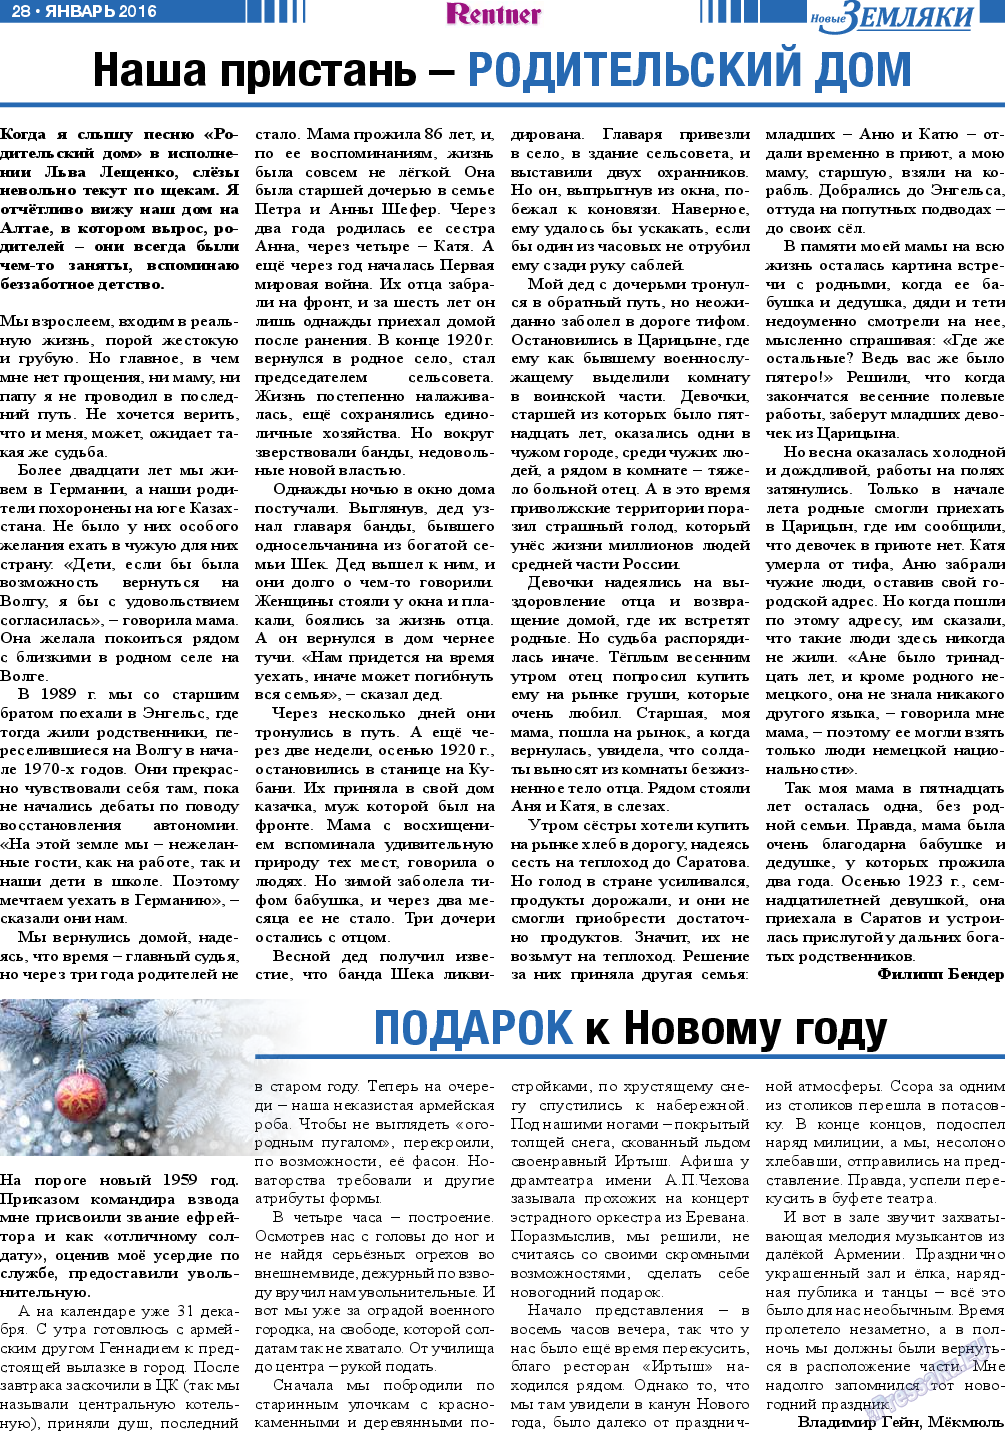 Новые Земляки, газета. 2016 №1 стр.28